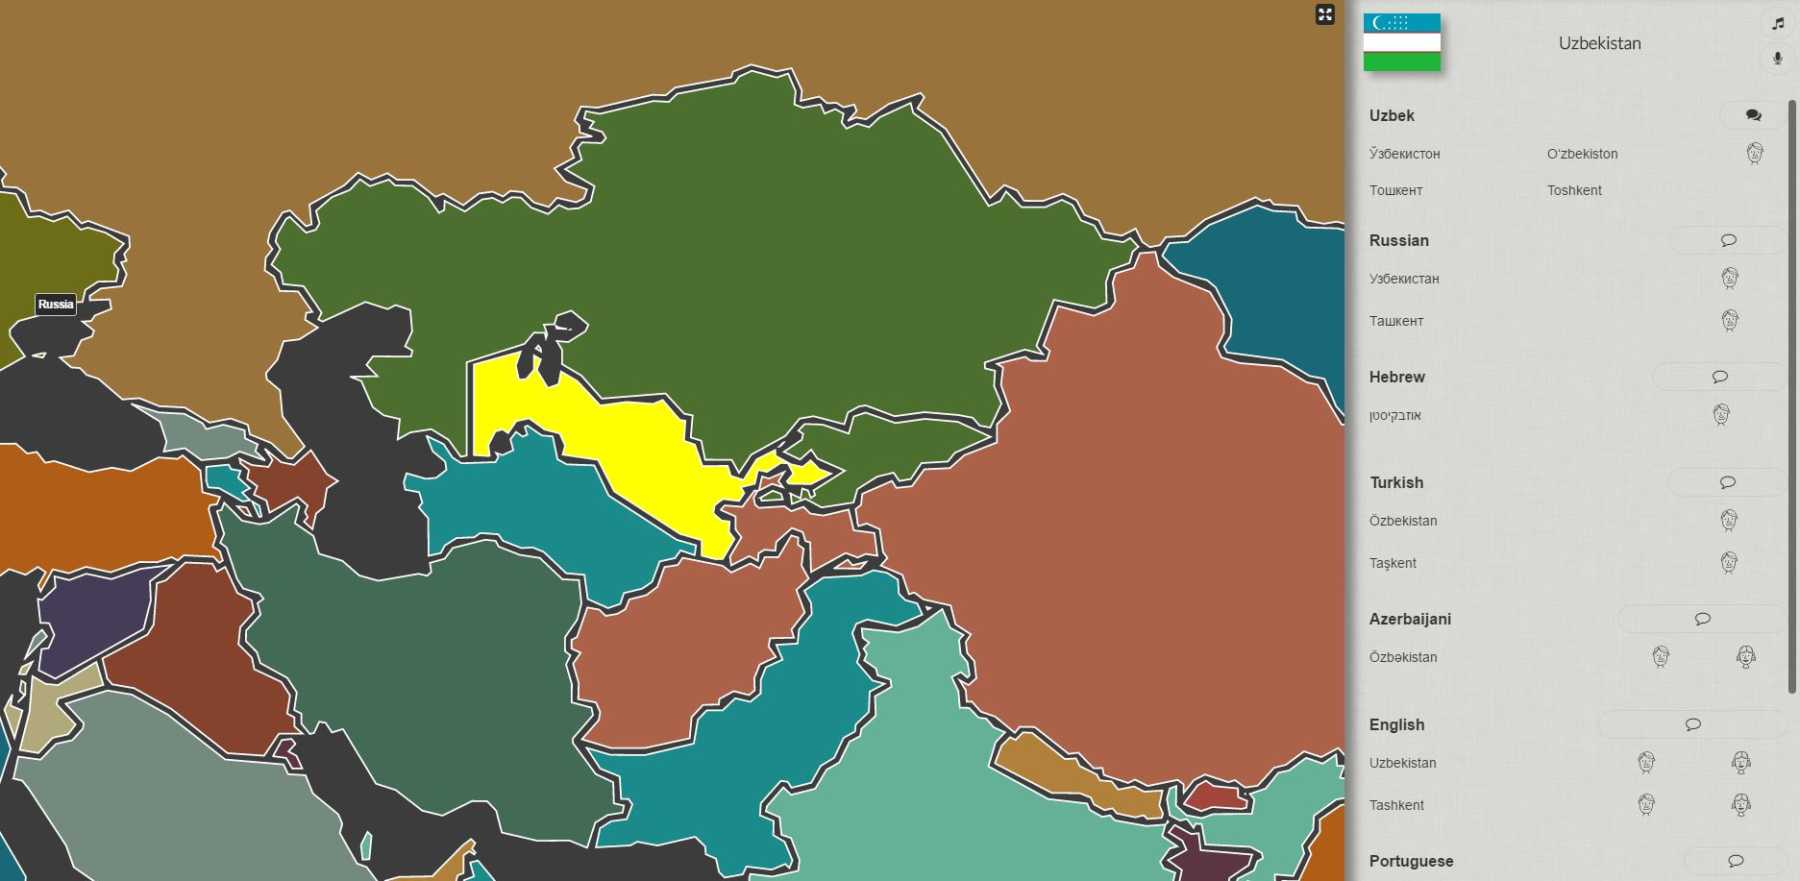 localingual uzbekistan | Un site web pour entendre les langues et accents du monde entier !